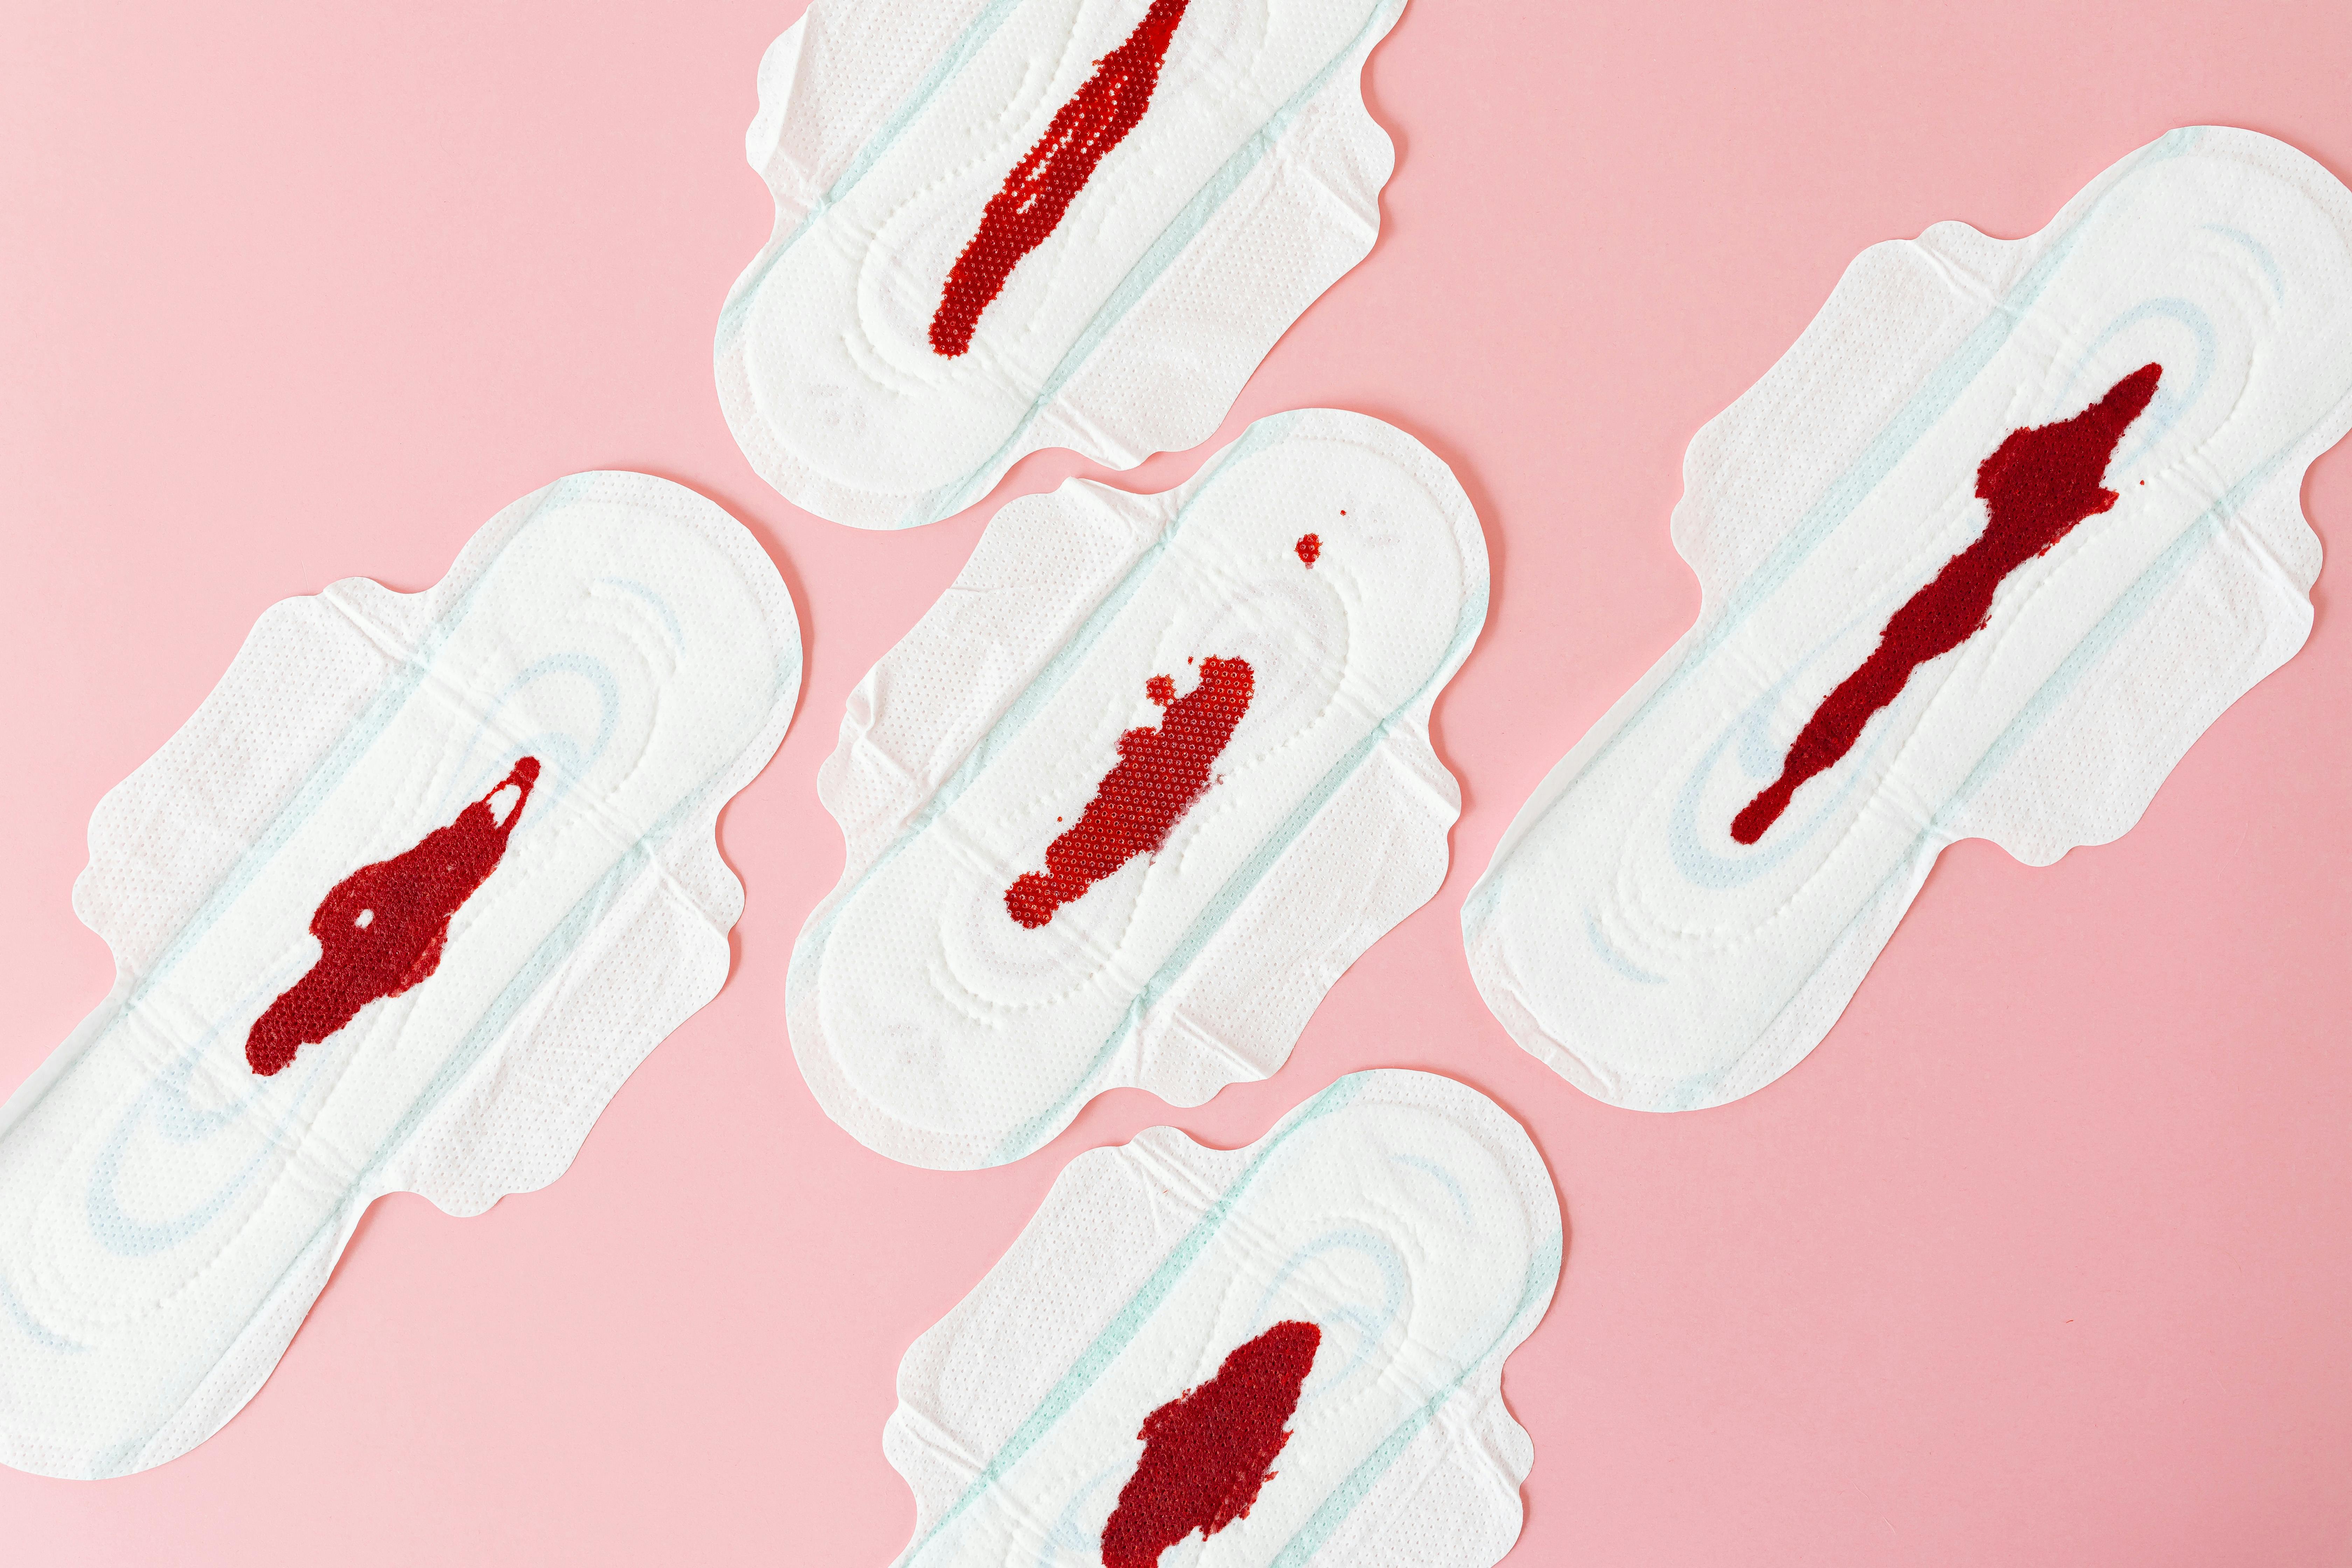 

<p>Maximiser la <b>durée de vie</b> de vos culottes menstruelles est essentiel pour assurer leur efficacité et durabilité. Ces sous-vêtements spéciaux nécessitent une attention et des soins particuliers pour maintenir leurs performances et leur confort. Les matières utilisées dans leur conception sont choisies pour leur capacité à absorber, mais elles peuvent s'user si elles ne sont pas traitées correctement. En suivant quelques conseils pratiques, vous pouvez vous assurer que vos culottes menstruelles restent en bon état et continuent de vous servir aussi efficacement que possible.</p>
<p>Il est important de noter que chaque marque et chaque style de culottes menstruelles peuvent avoir des instructions de soin spécifiques. Par conséquent, il est toujours préférable de suivre les instructions fournies par le fabricant. Cependant, il existe certaines pratiques générales qui peuvent aider à prolonger la durée de vie de la plupart des culottes menstruelles, telles que le lavage à l'eau froide et l'évitement de l'utilisation de javellisants et d'adoucissants.</p>
<h3>Choix des Matériaux</h3>
<p>Le choix des matériaux de vos culottes menstruelles est une considération essentielle pour maximiser leur durée de vie. Optez pour des matériaux de <b>qualité supérieure</b> qui sont non seulement absorbants, mais aussi durables. Les tissus naturels comme le coton biologique peuvent être un excellent choix car ils sont doux, confortables et moins susceptibles de causer des irritations. Cependant, certains tissus synthétiques de haute technologie peuvent également offrir une excellente absorption et durabilité.</p>
<p>Lors de l'achat, il est également conseillé de considérer la <i>respirabilité</i> et la capacité d'absorption des matériaux. Des matériaux qui permettent une bonne circulation de l'air peuvent aider à prévenir les irritations et offrir un meilleur confort pendant vos périodes. Assurez-vous également que les matériaux utilisés sont capables d'absorber efficacement le flux menstruel sans fuites.</p>
<h3>Méthodes de Lavage</h3>
<p>Les méthodes de lavage que vous choisissez ont un impact direct sur la durée de vie de vos culottes menstruelles. Il est recommandé de laver les culottes à l'eau froide et d'éviter l'utilisation de produits chimiques agressifs qui peuvent détériorer les <b>fibres absorbantes</b>. Le lavage à la main est une méthode douce qui peut aider à préserver la qualité des matériaux, mais si vous préférez utiliser une machine, assurez-vous d'utiliser un cycle délicat.</p>
<p>L'usage de détergents doux et spécifiquement formulés pour les vêtements délicats est également conseillé. Évitez d'utiliser des adoucissants et des agents de blanchiment, car ils peuvent affecter l'absorption et la <i>flexibilité</i> des matériaux. Le séchage à l'air libre est préférable, car la chaleur excessive du sèche-linge peut affecter la structure et l'efficacité des culottes menstruelles.</p>
<h3>Stockage Approprié</h3>
<p>Le stockage de vos culottes menstruelles est également crucial pour maintenir leur efficacité. Assurez-vous qu'elles soient complètement sèches avant de les ranger pour éviter la formation de moisissures ou de mauvaises odeurs. Il est préférable de les stocker dans un endroit frais et sec, à l'abri de la lumière directe du soleil qui pourrait détériorer les matériaux au fil du temps.</p>
<p>En outre, assurez-vous de stocker vos culottes menstruelles de manière à ce qu'elles conservent leur forme. Évitez de les tasser ou de les étirer inutilement. Un stockage soigné contribue non seulement à prolonger leur durée de vie, mais aussi à maintenir leur <b>efficacité</b> et leur <i>confort</i> pendant vos périodes.</p>
<p>